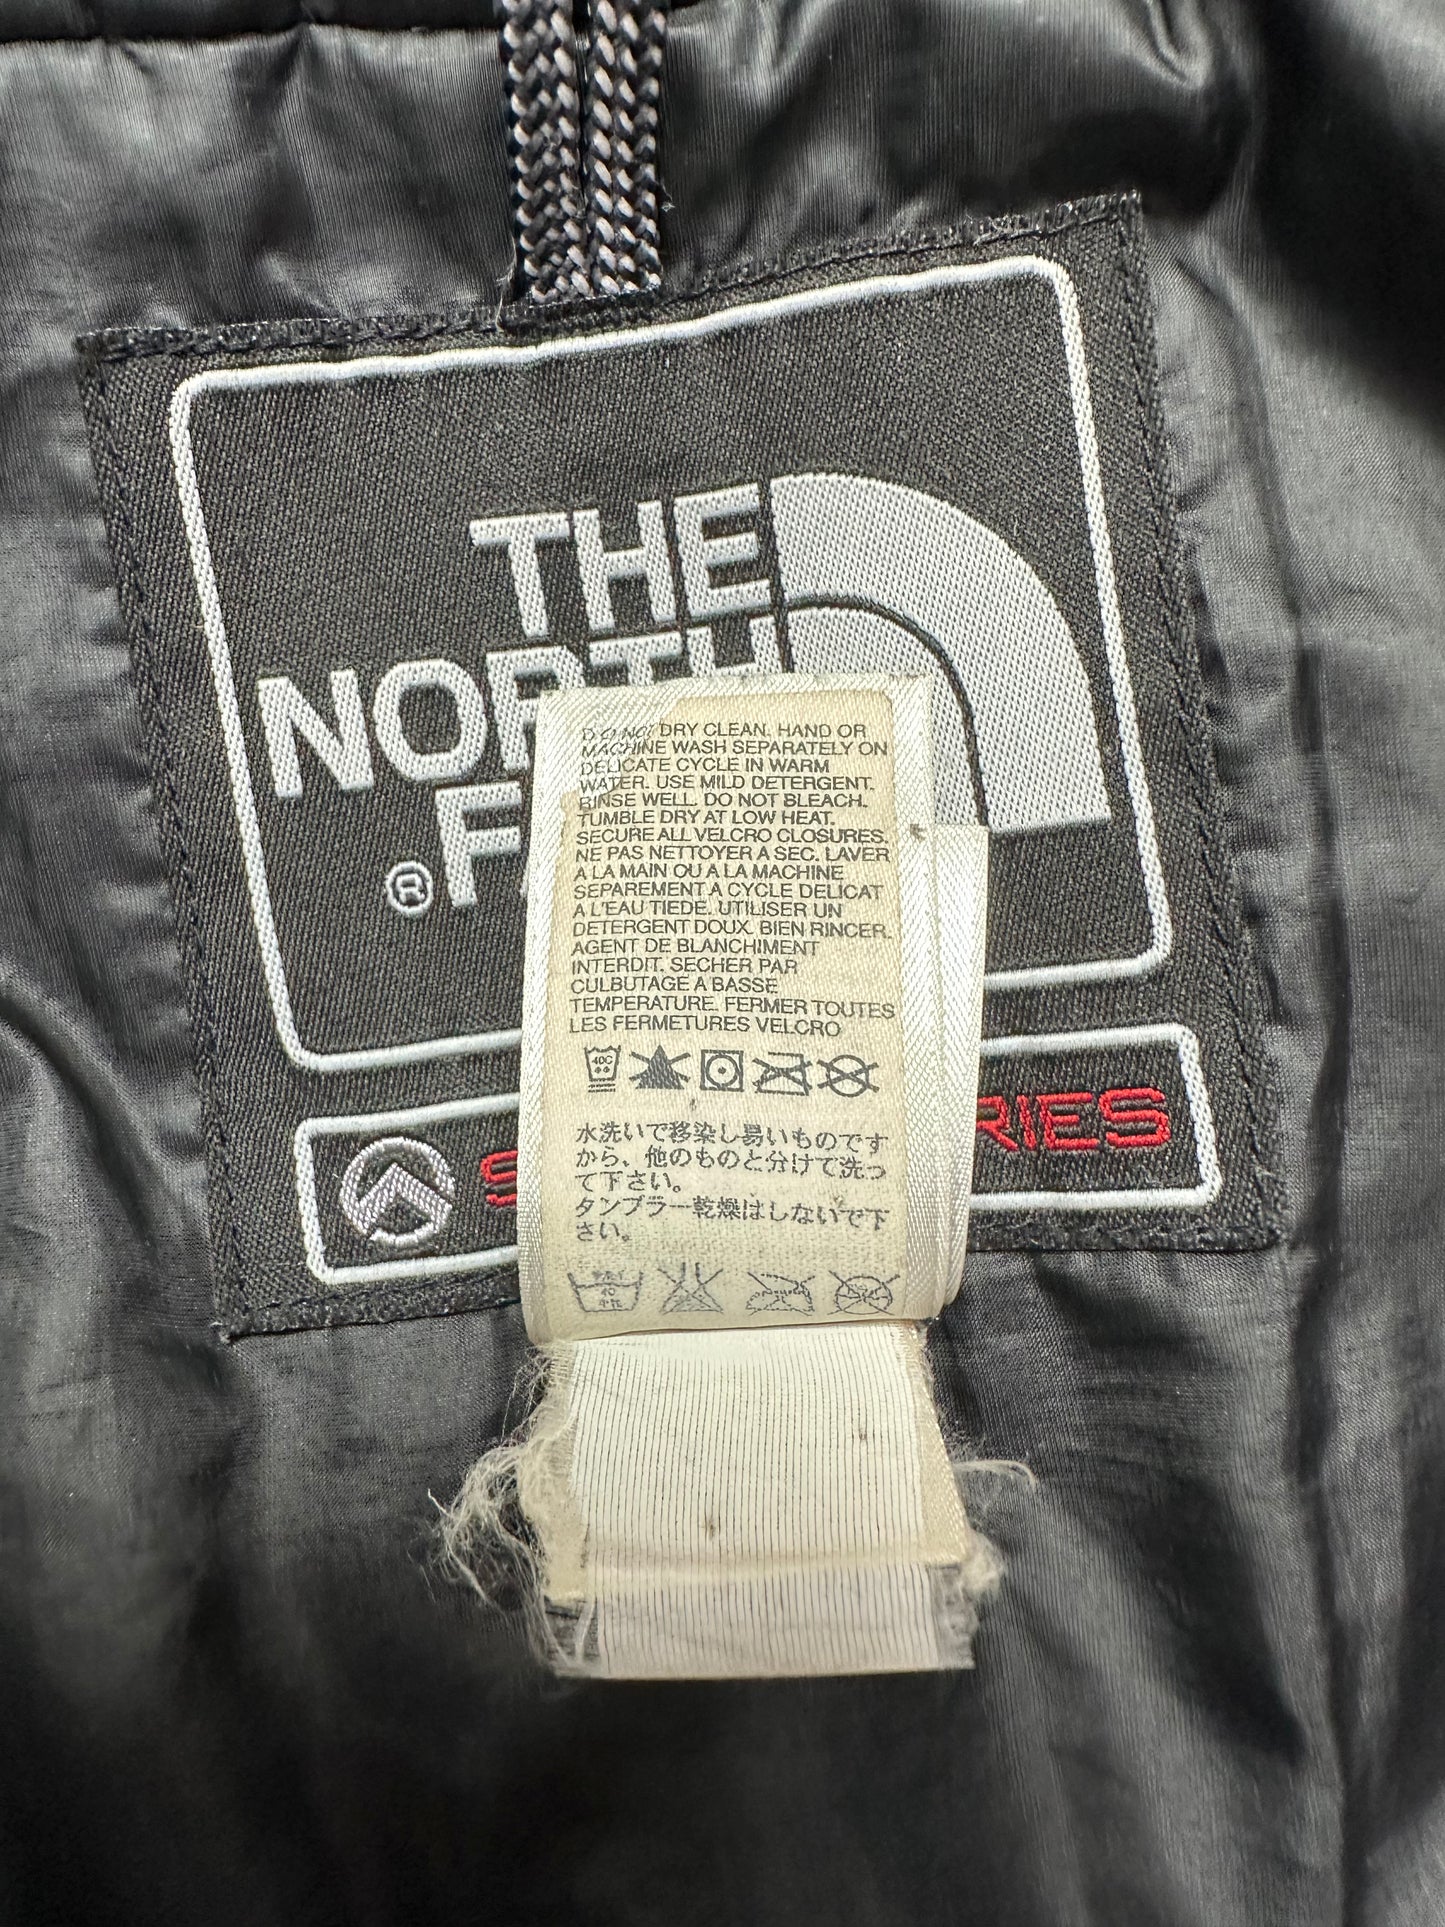 10058【THE NORTH FACE】ザノースフェイス メンズ サミットシリーズ ダウンジャケット ネイビー S